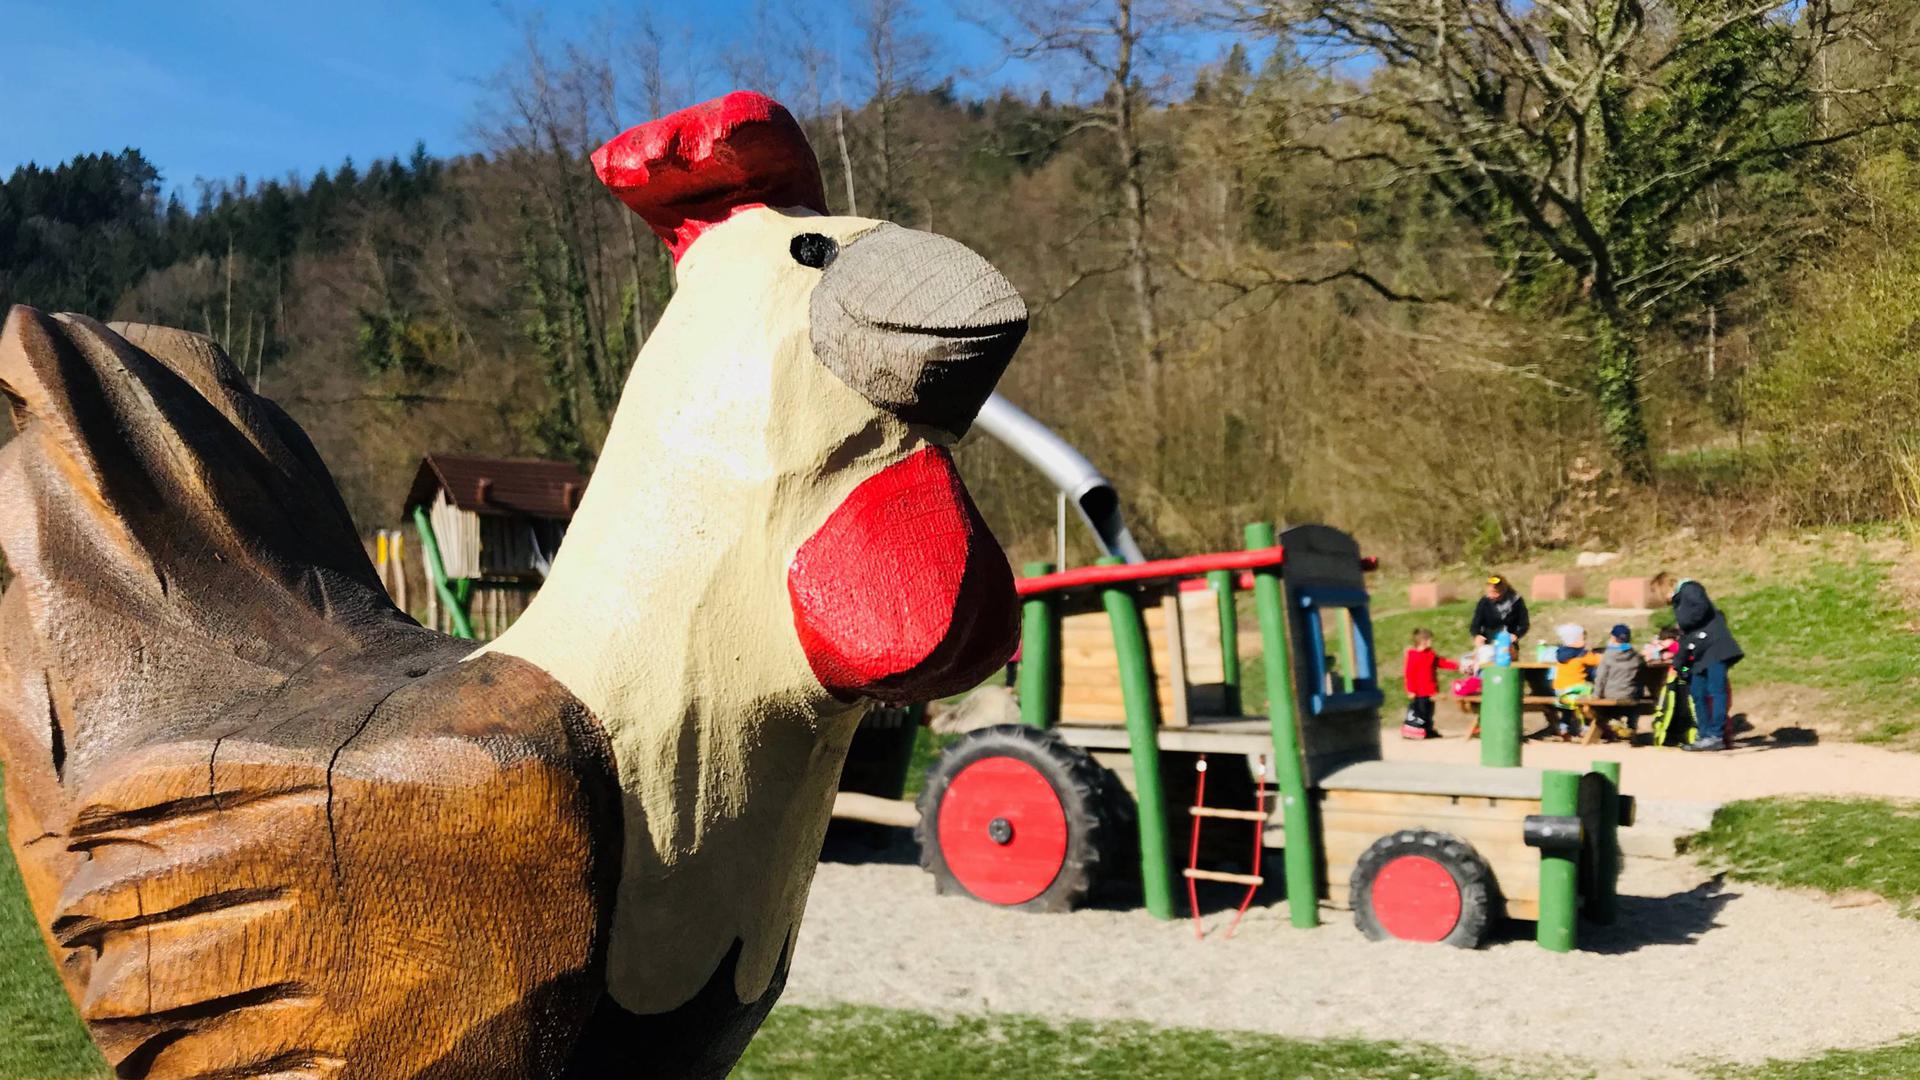 Am Spielplatz Sägmüllermatte in Baden-Baden  geht es um das Thema Bauernhof. Zu sehen sind ein großes hölzernes Huhn und ein Spielgerät, das auf einem Traktor basiert. 